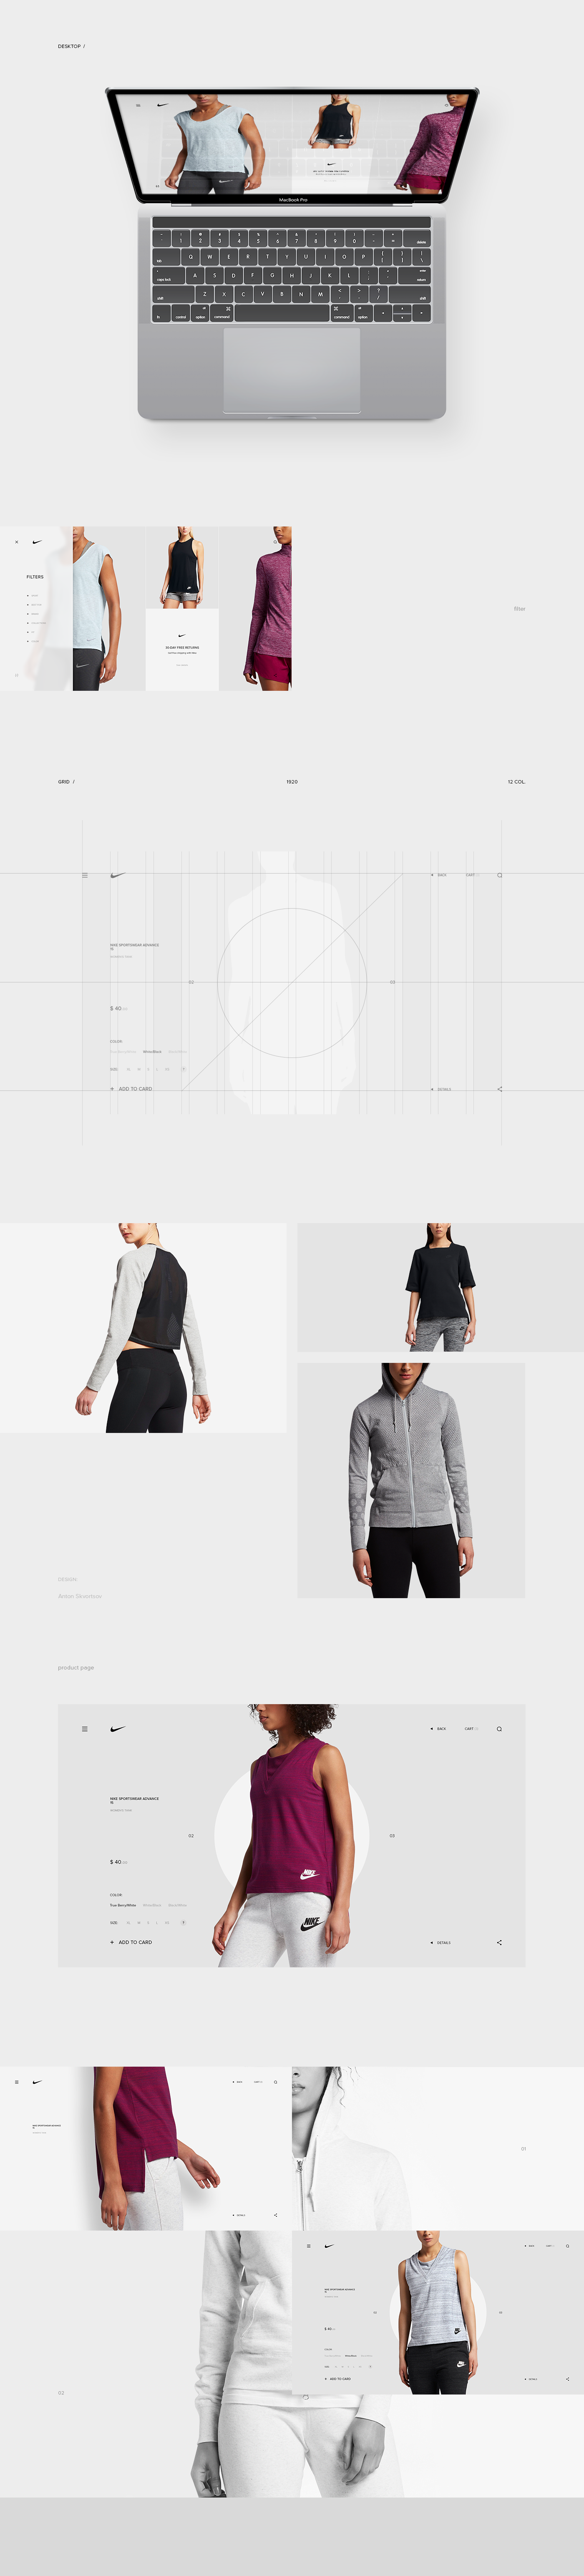 Web UI ux grid Nike store animation  Layout interaction Webdesign